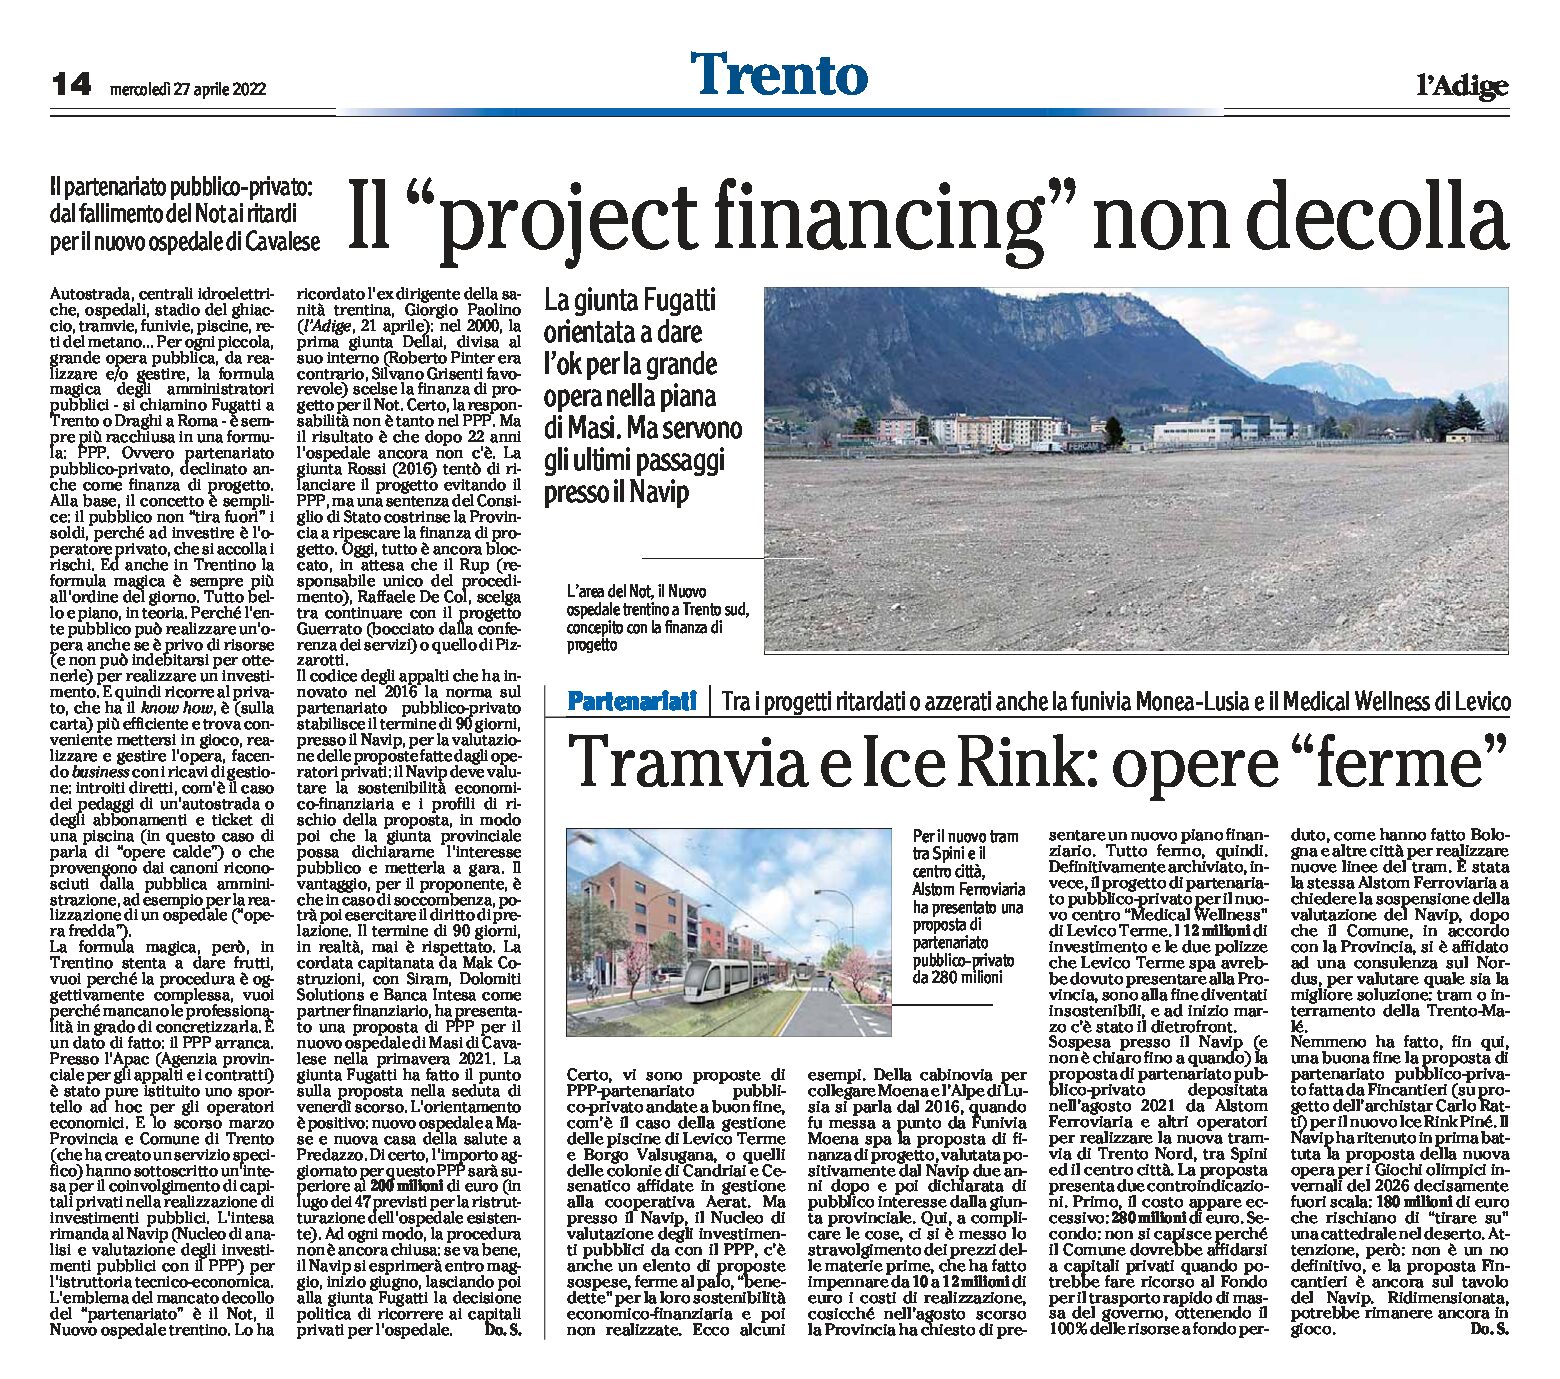 Trentino: il “project financing” non decolla